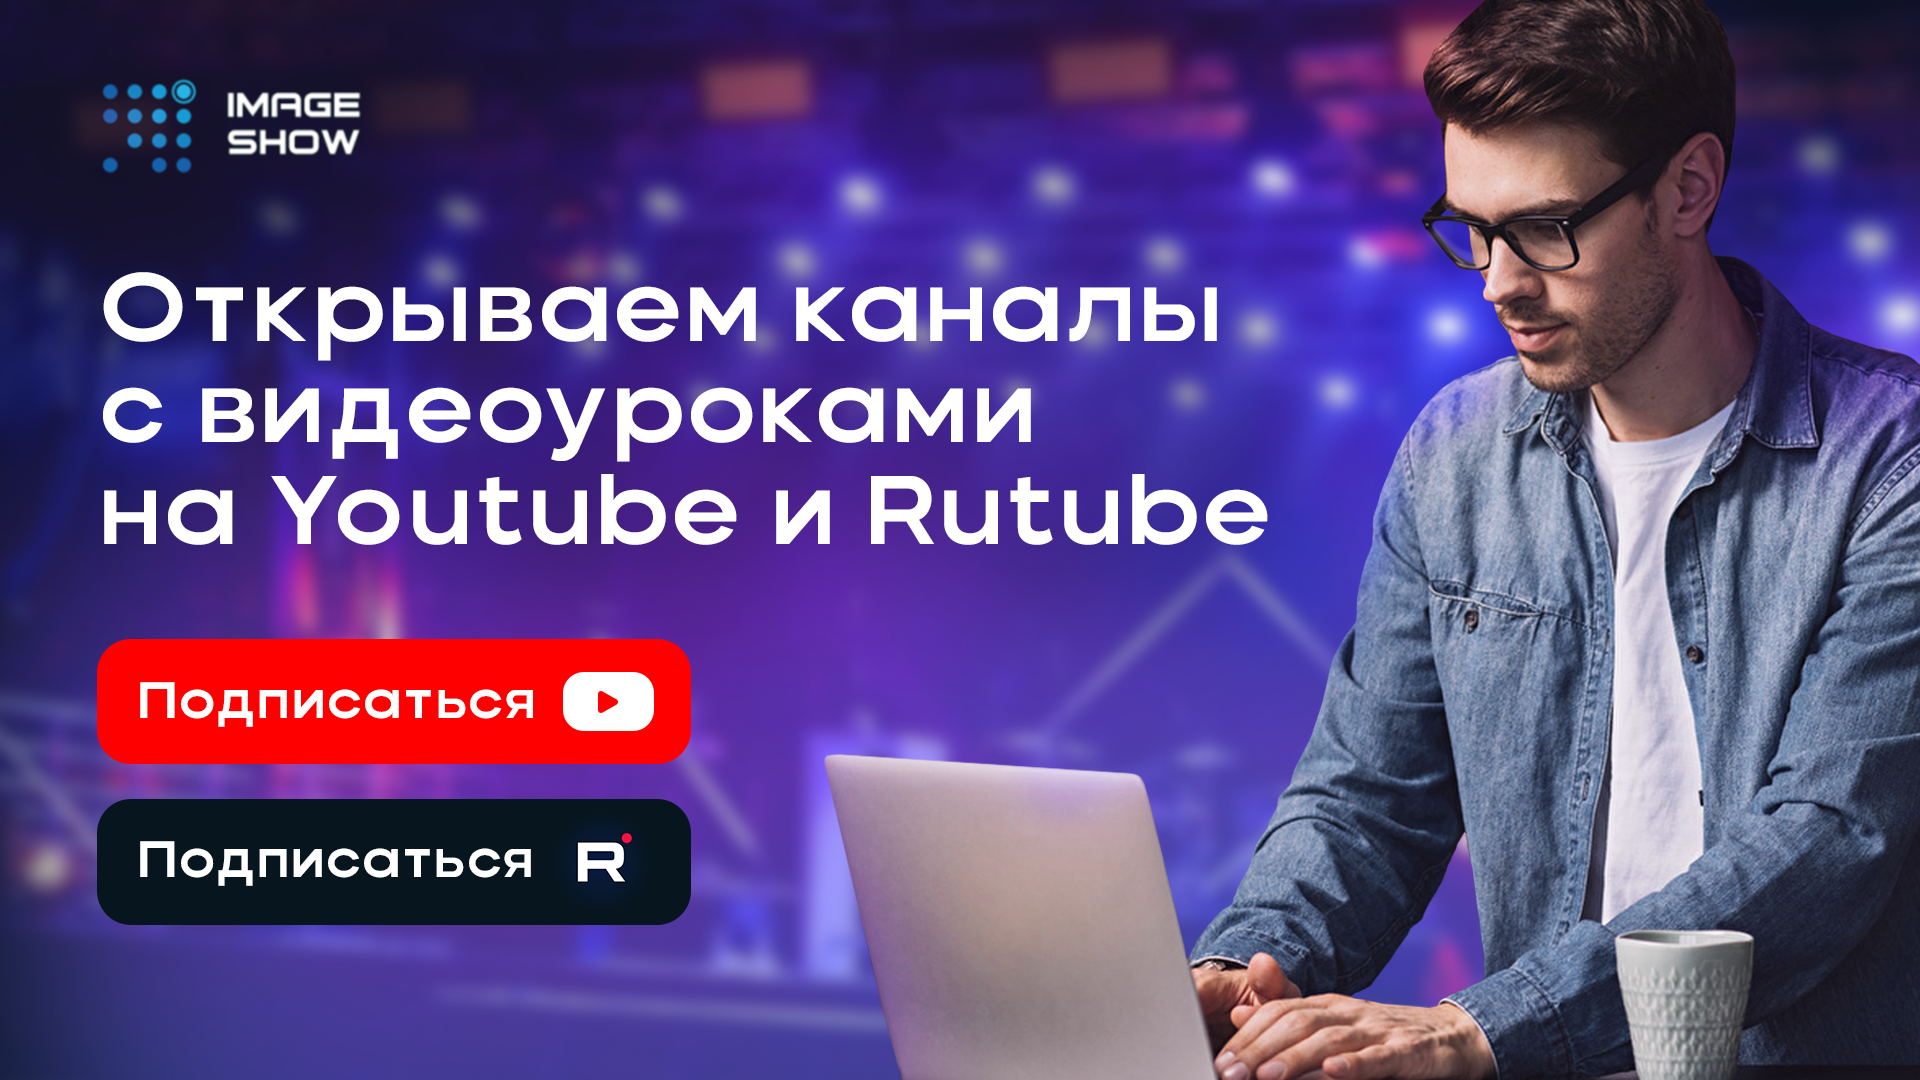 Image Show теперь на Youtube и Rutube!